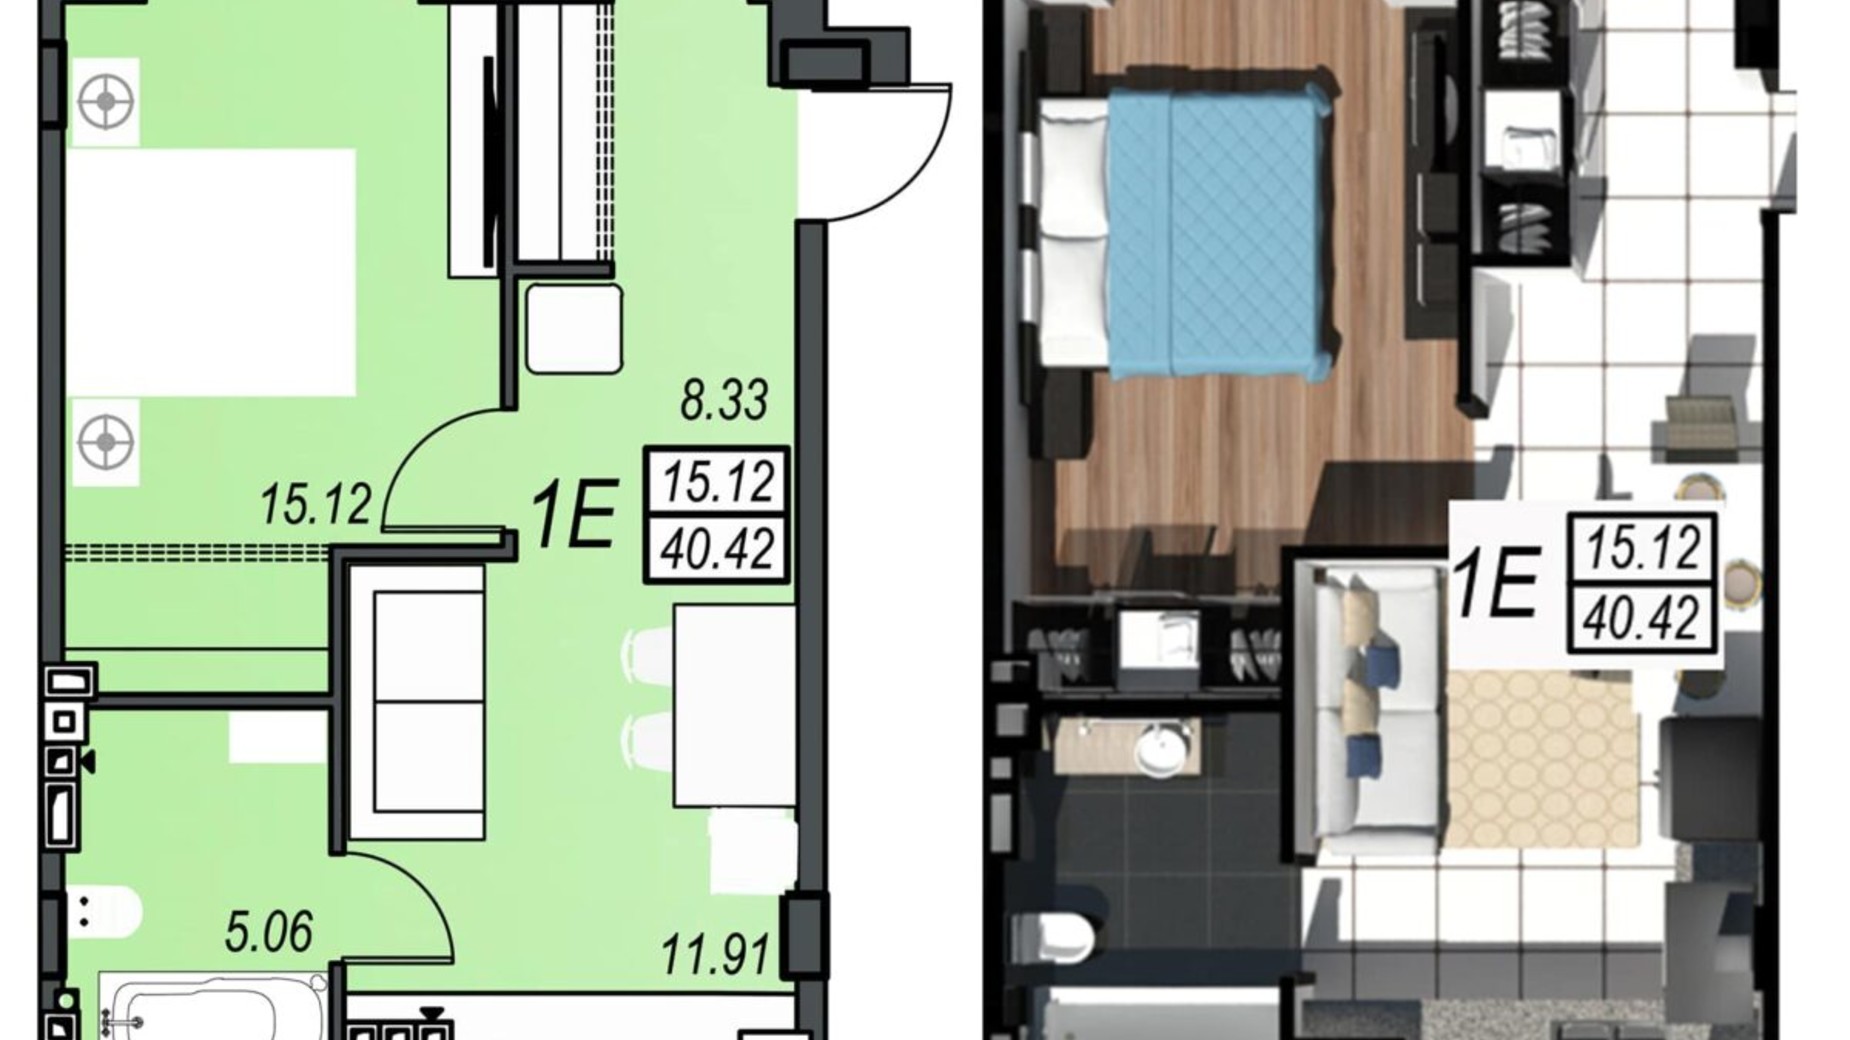 Планировка 1-комнатной квартиры в ЖК Sunrise City 40.42 м², фото 610479